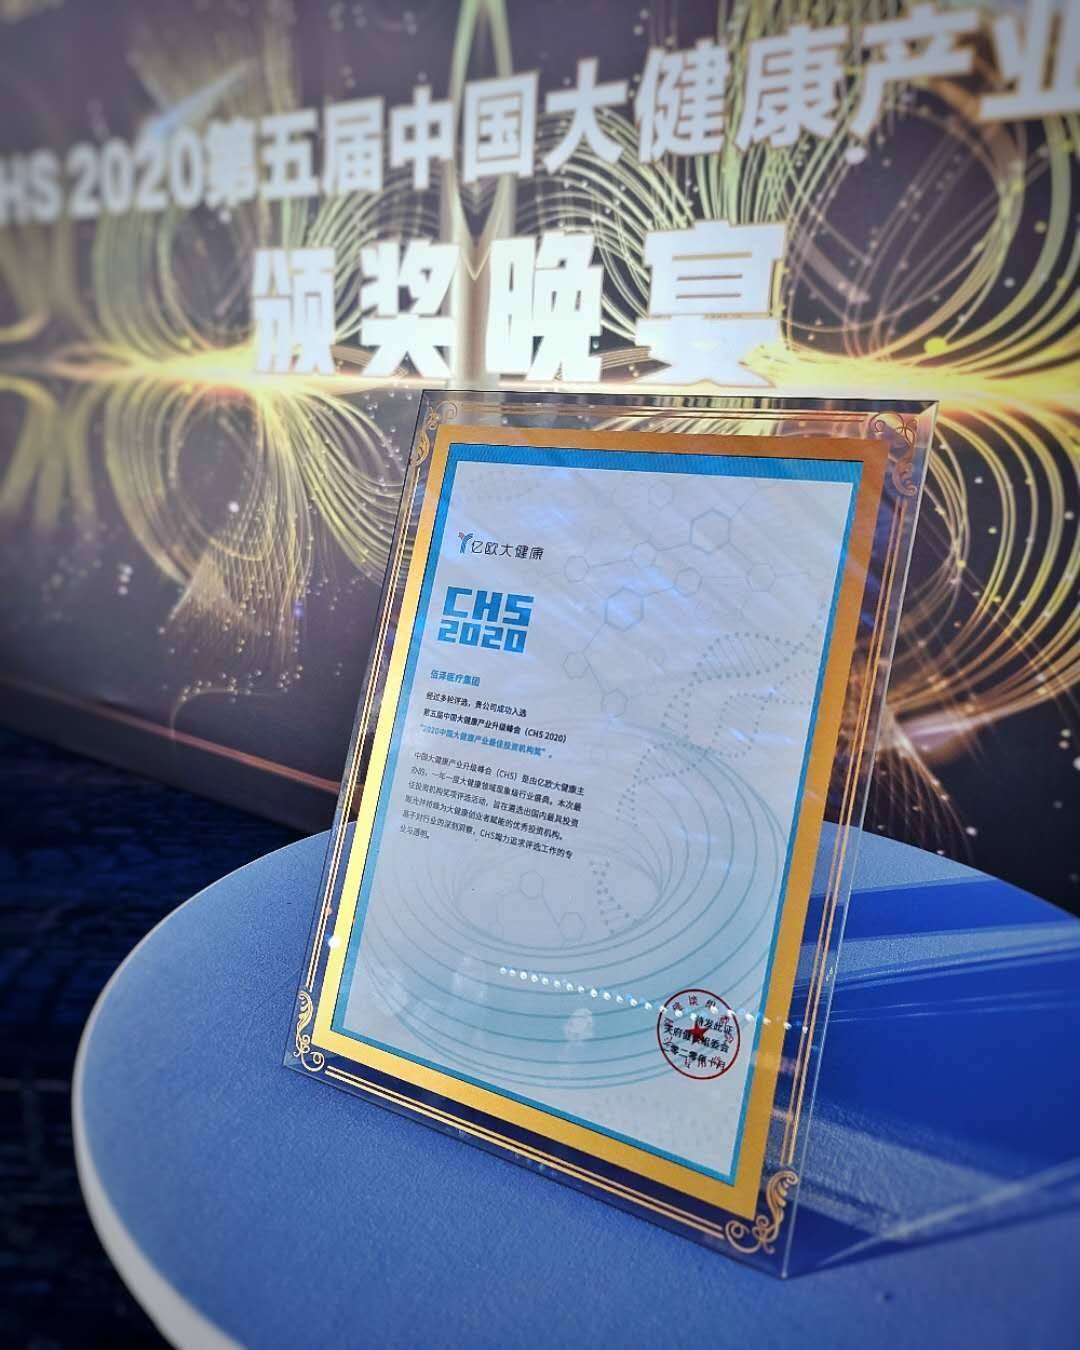 佰泽医疗集团荣获2020年度中国大健康产业最佳投资机构奖